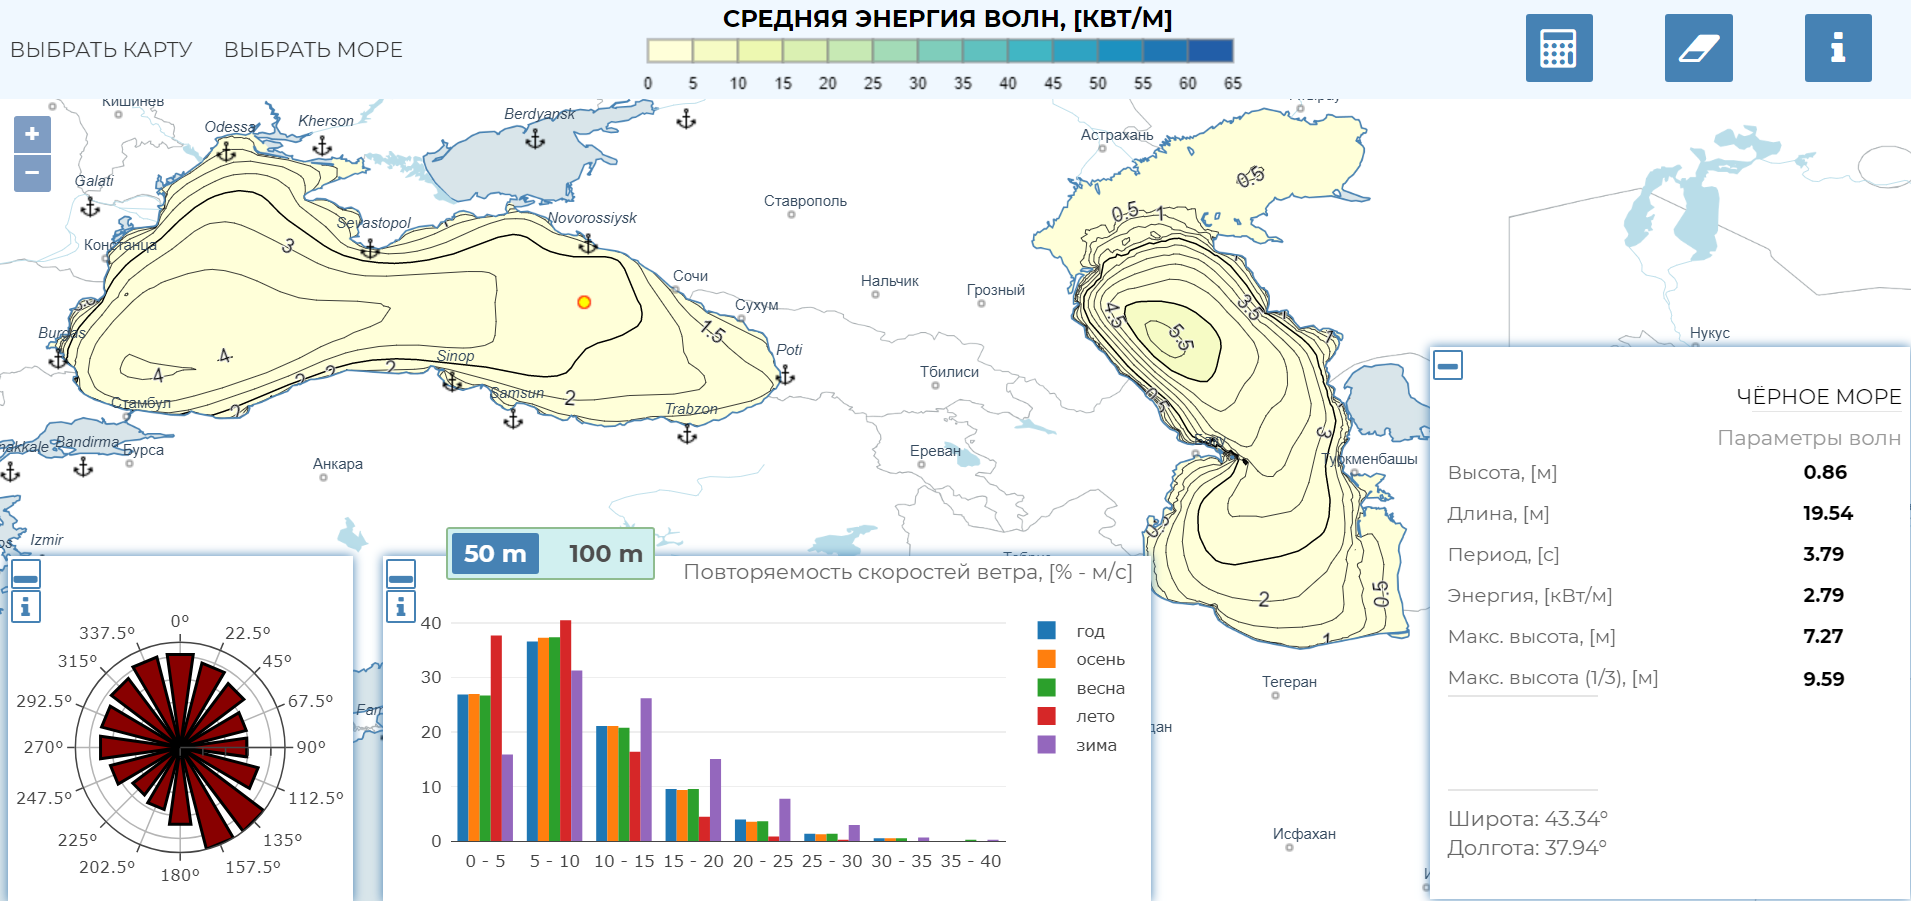 Карта волновой энергии Черного моря. Фото предоставлено пресс-службой геофака МГУ